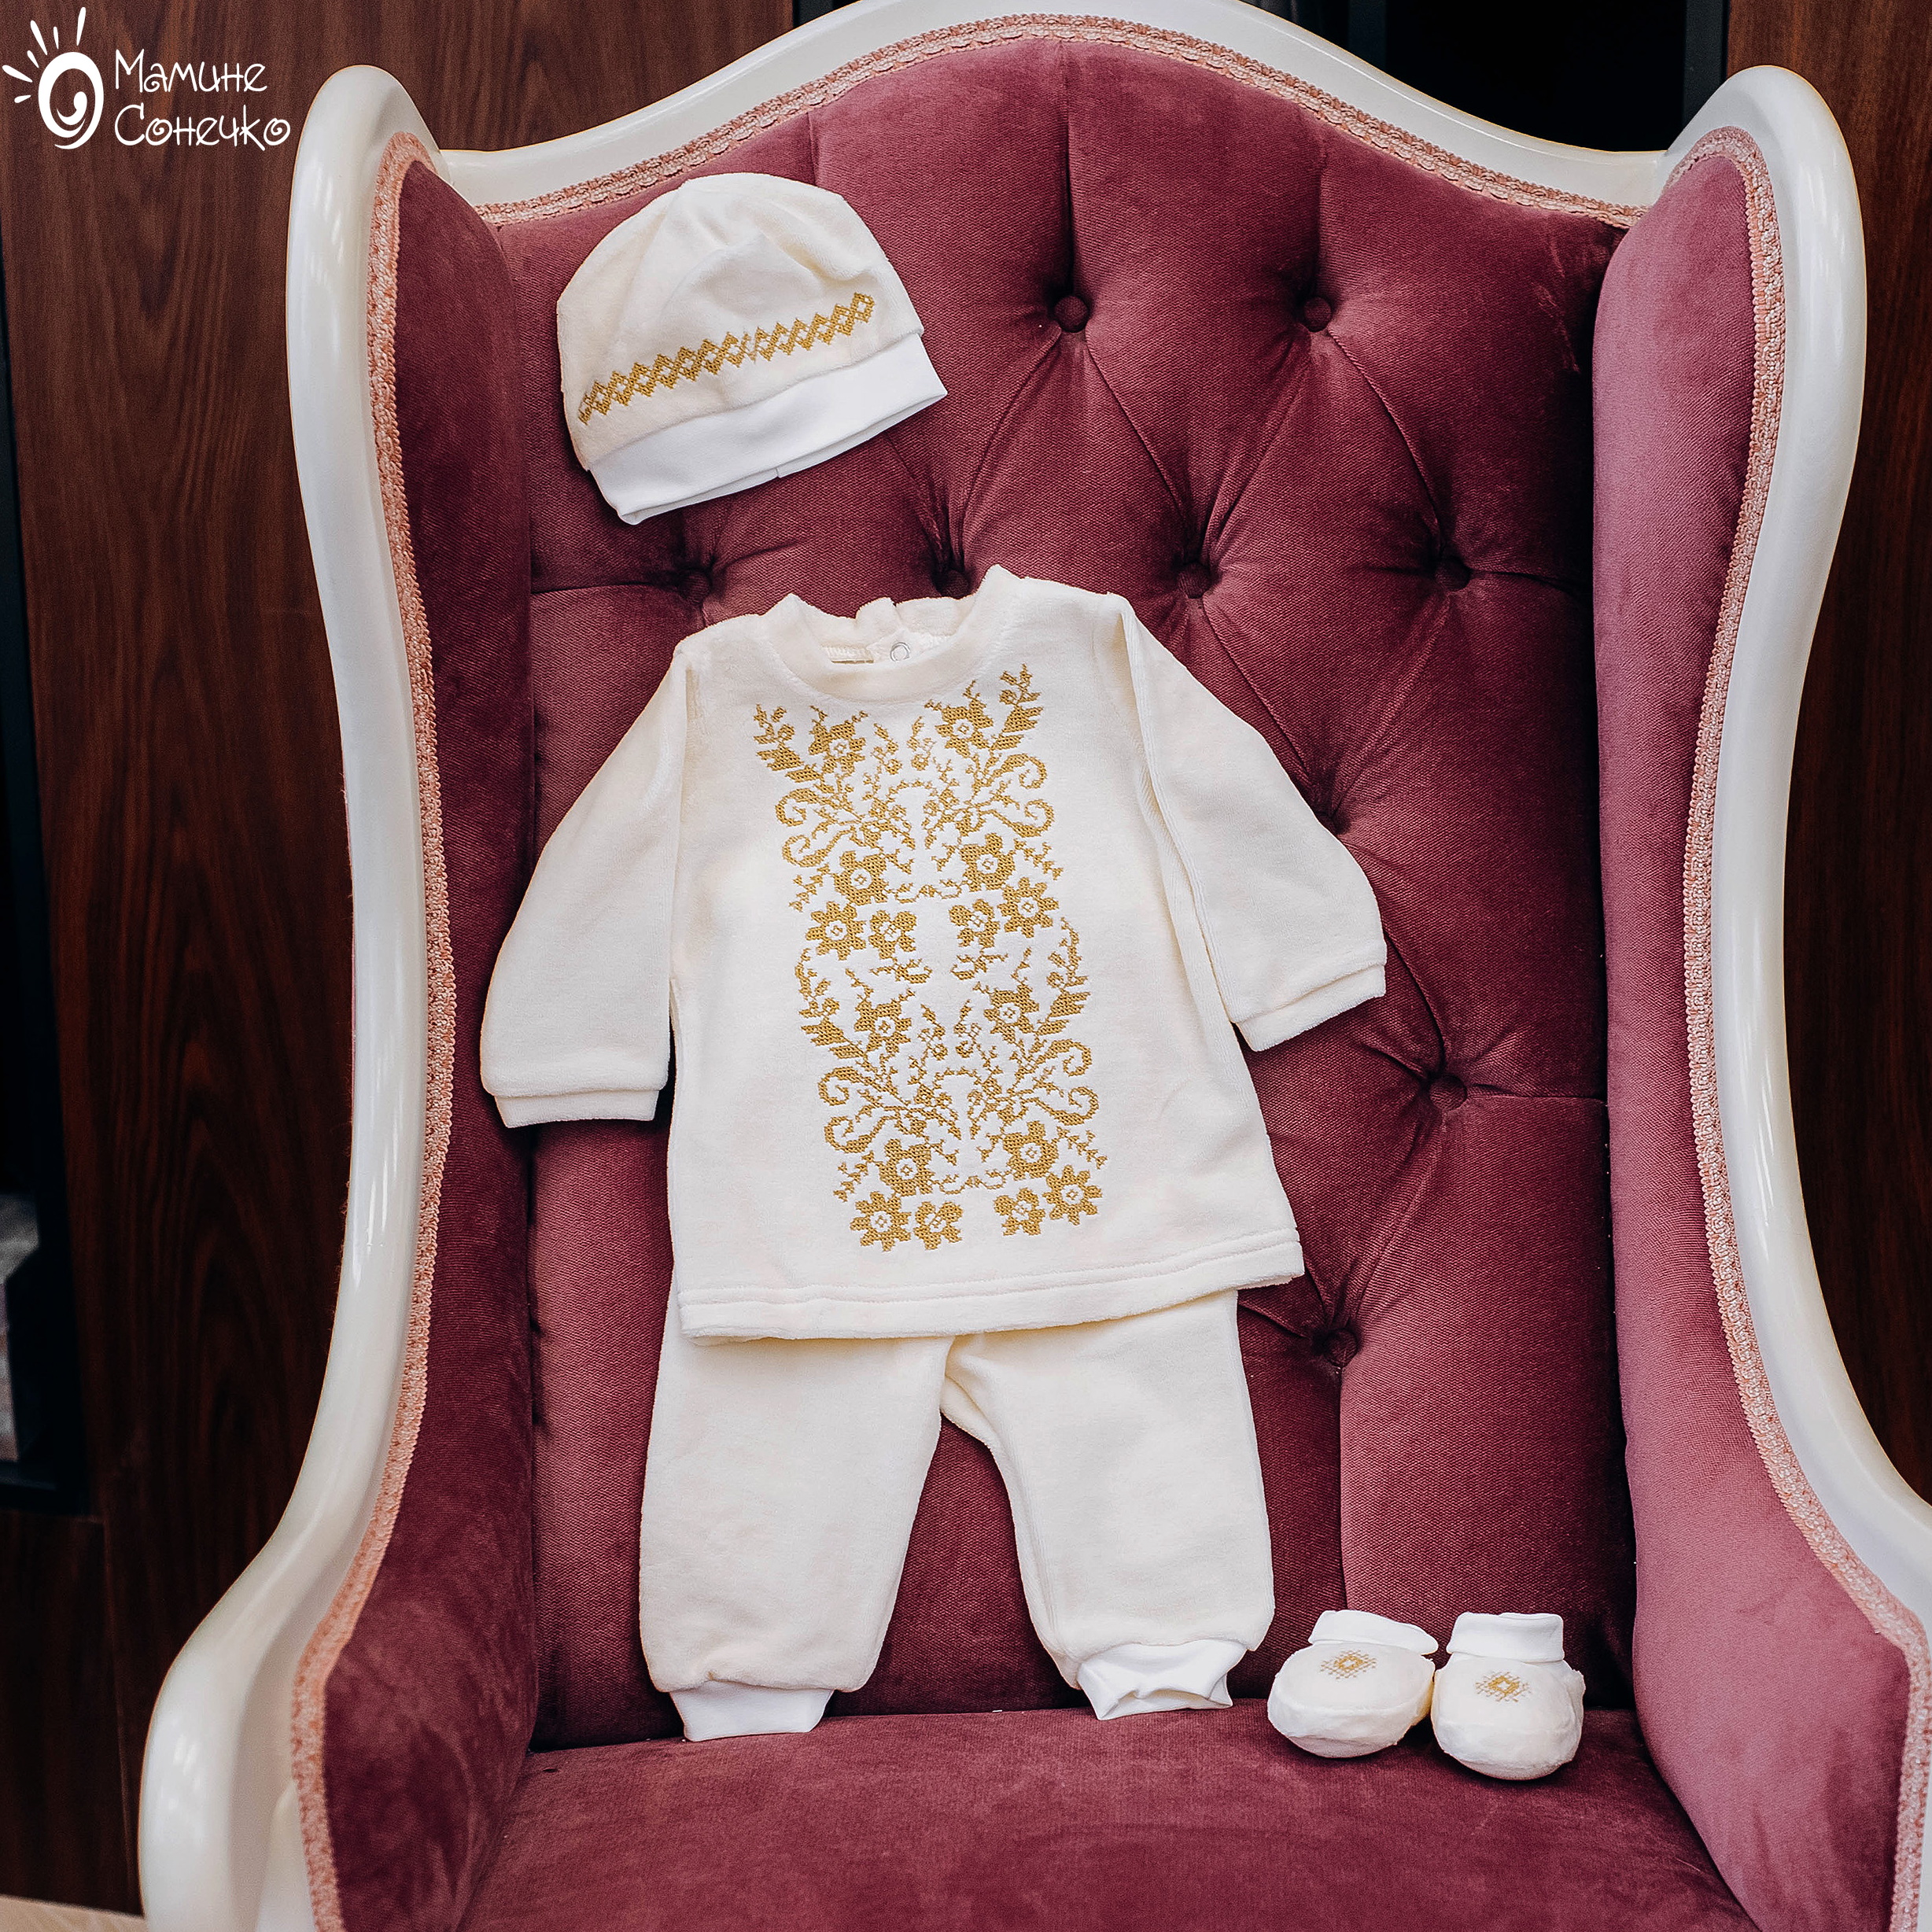 Boy’s baptismal suit “Monochrome flowers gold”, velour